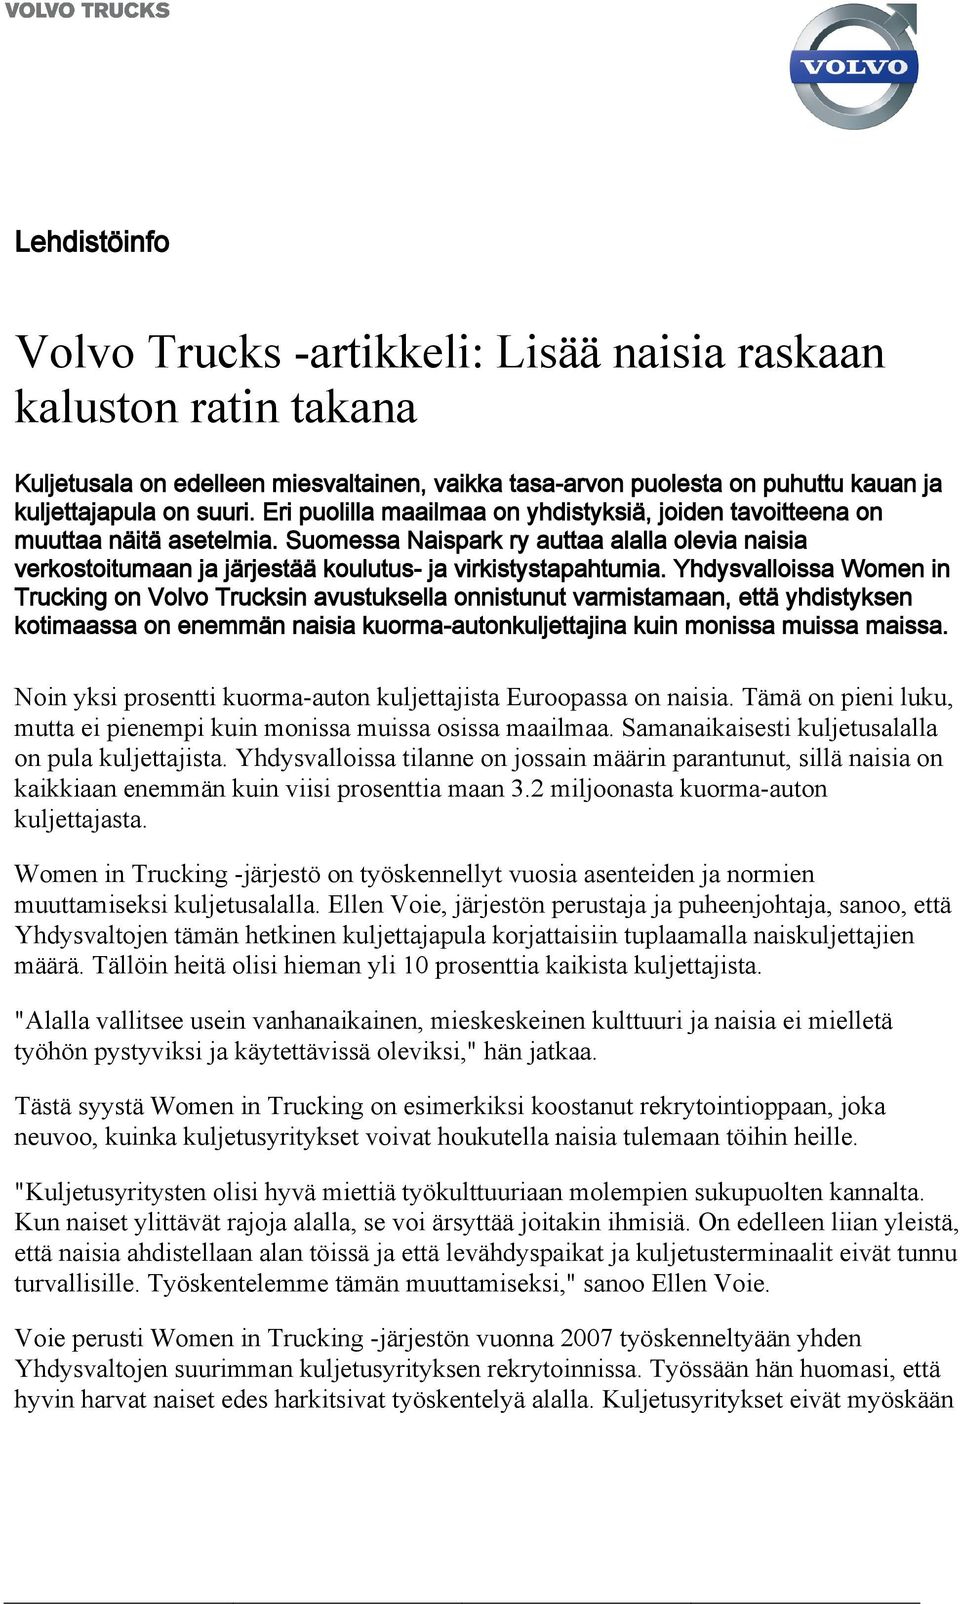 Yhdysvalloissa Women in Trucking on Volvo Trucksin avustuksella onnistunut varmistamaan, että yhdistyksen kotimaassa on enemmän naisia kuorma-autonkuljettajina kuin monissa muissa maissa.